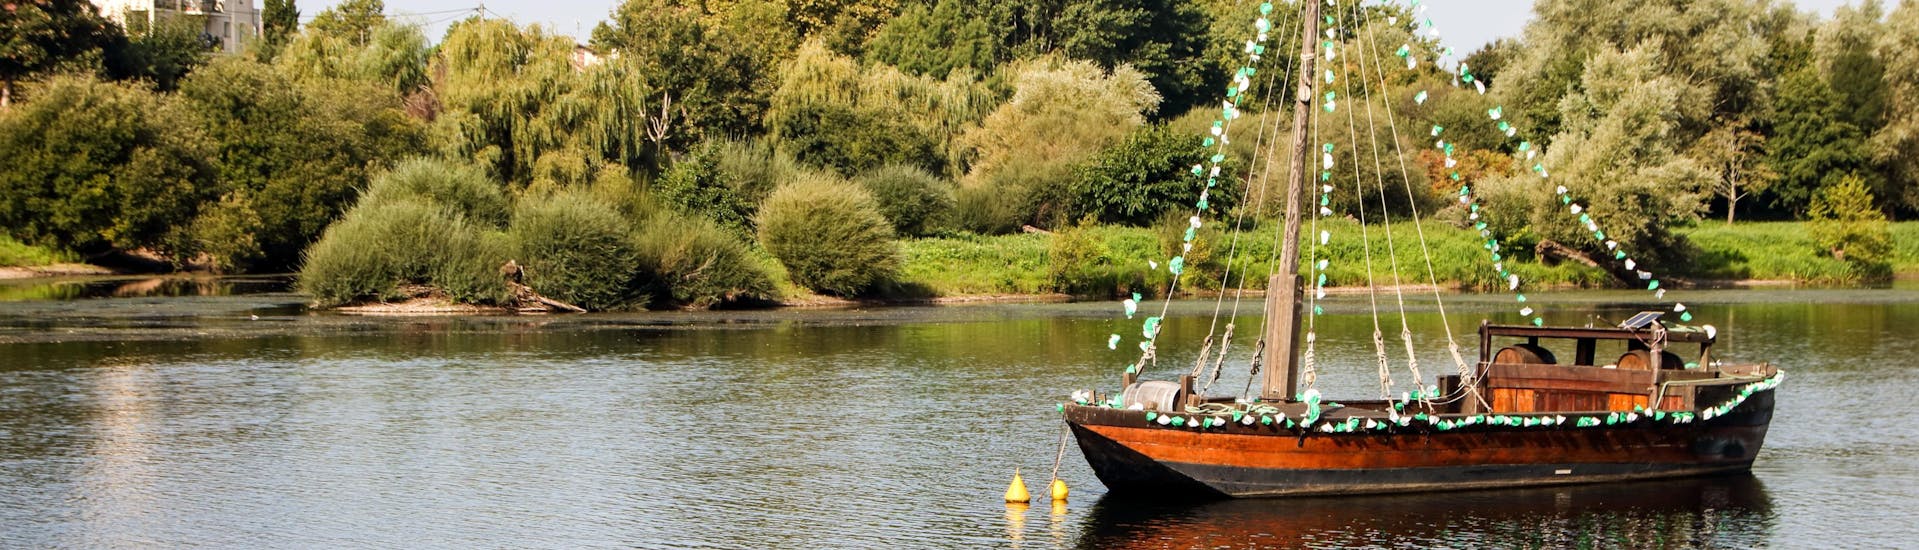 Une gabarre glisse lentement sur la Dordogne à Port-Sainte-Foy, l'une des rivières populaires en France pour la pratique du canoë.